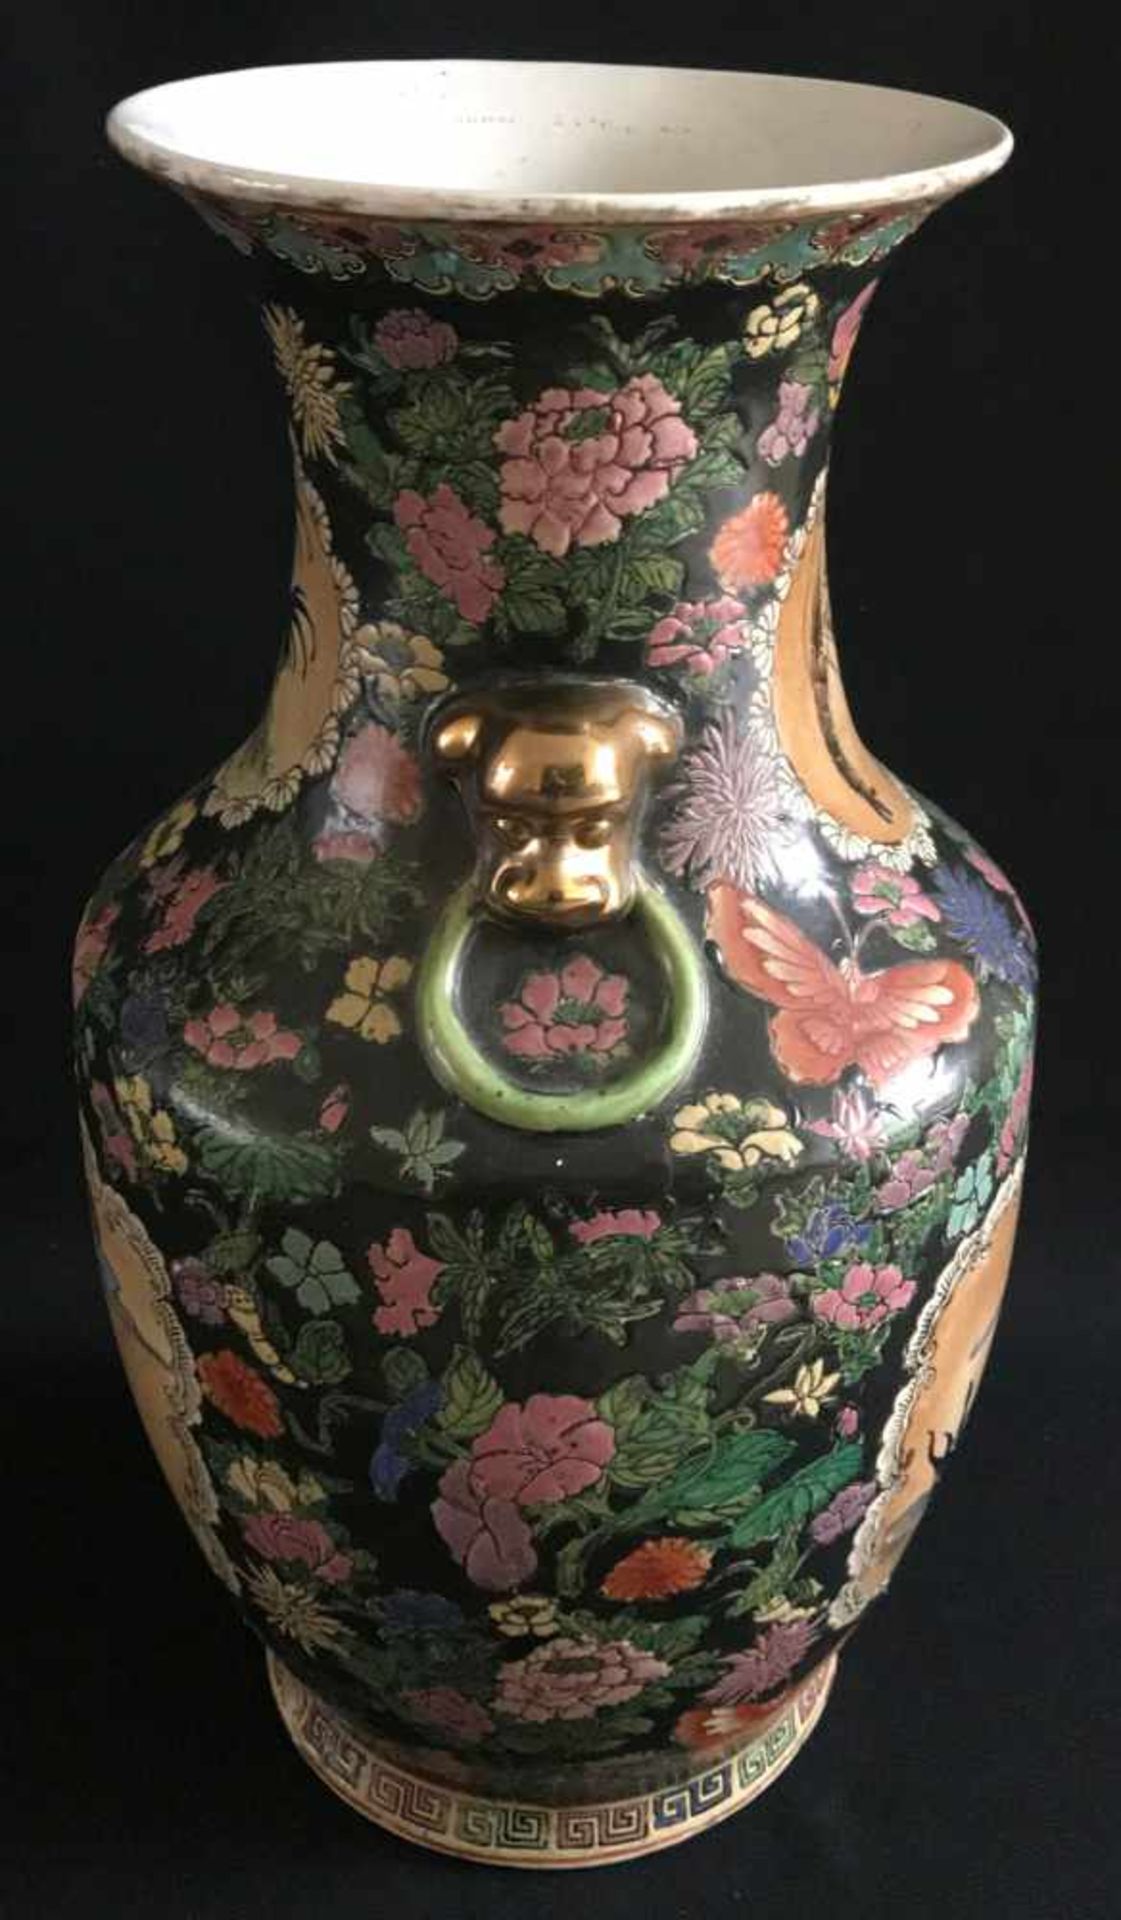 Chinesische Vase mit Blumen, Schmetterlingen und Früchten auf schwarzem Grund sowie Fischen und - Bild 3 aus 3